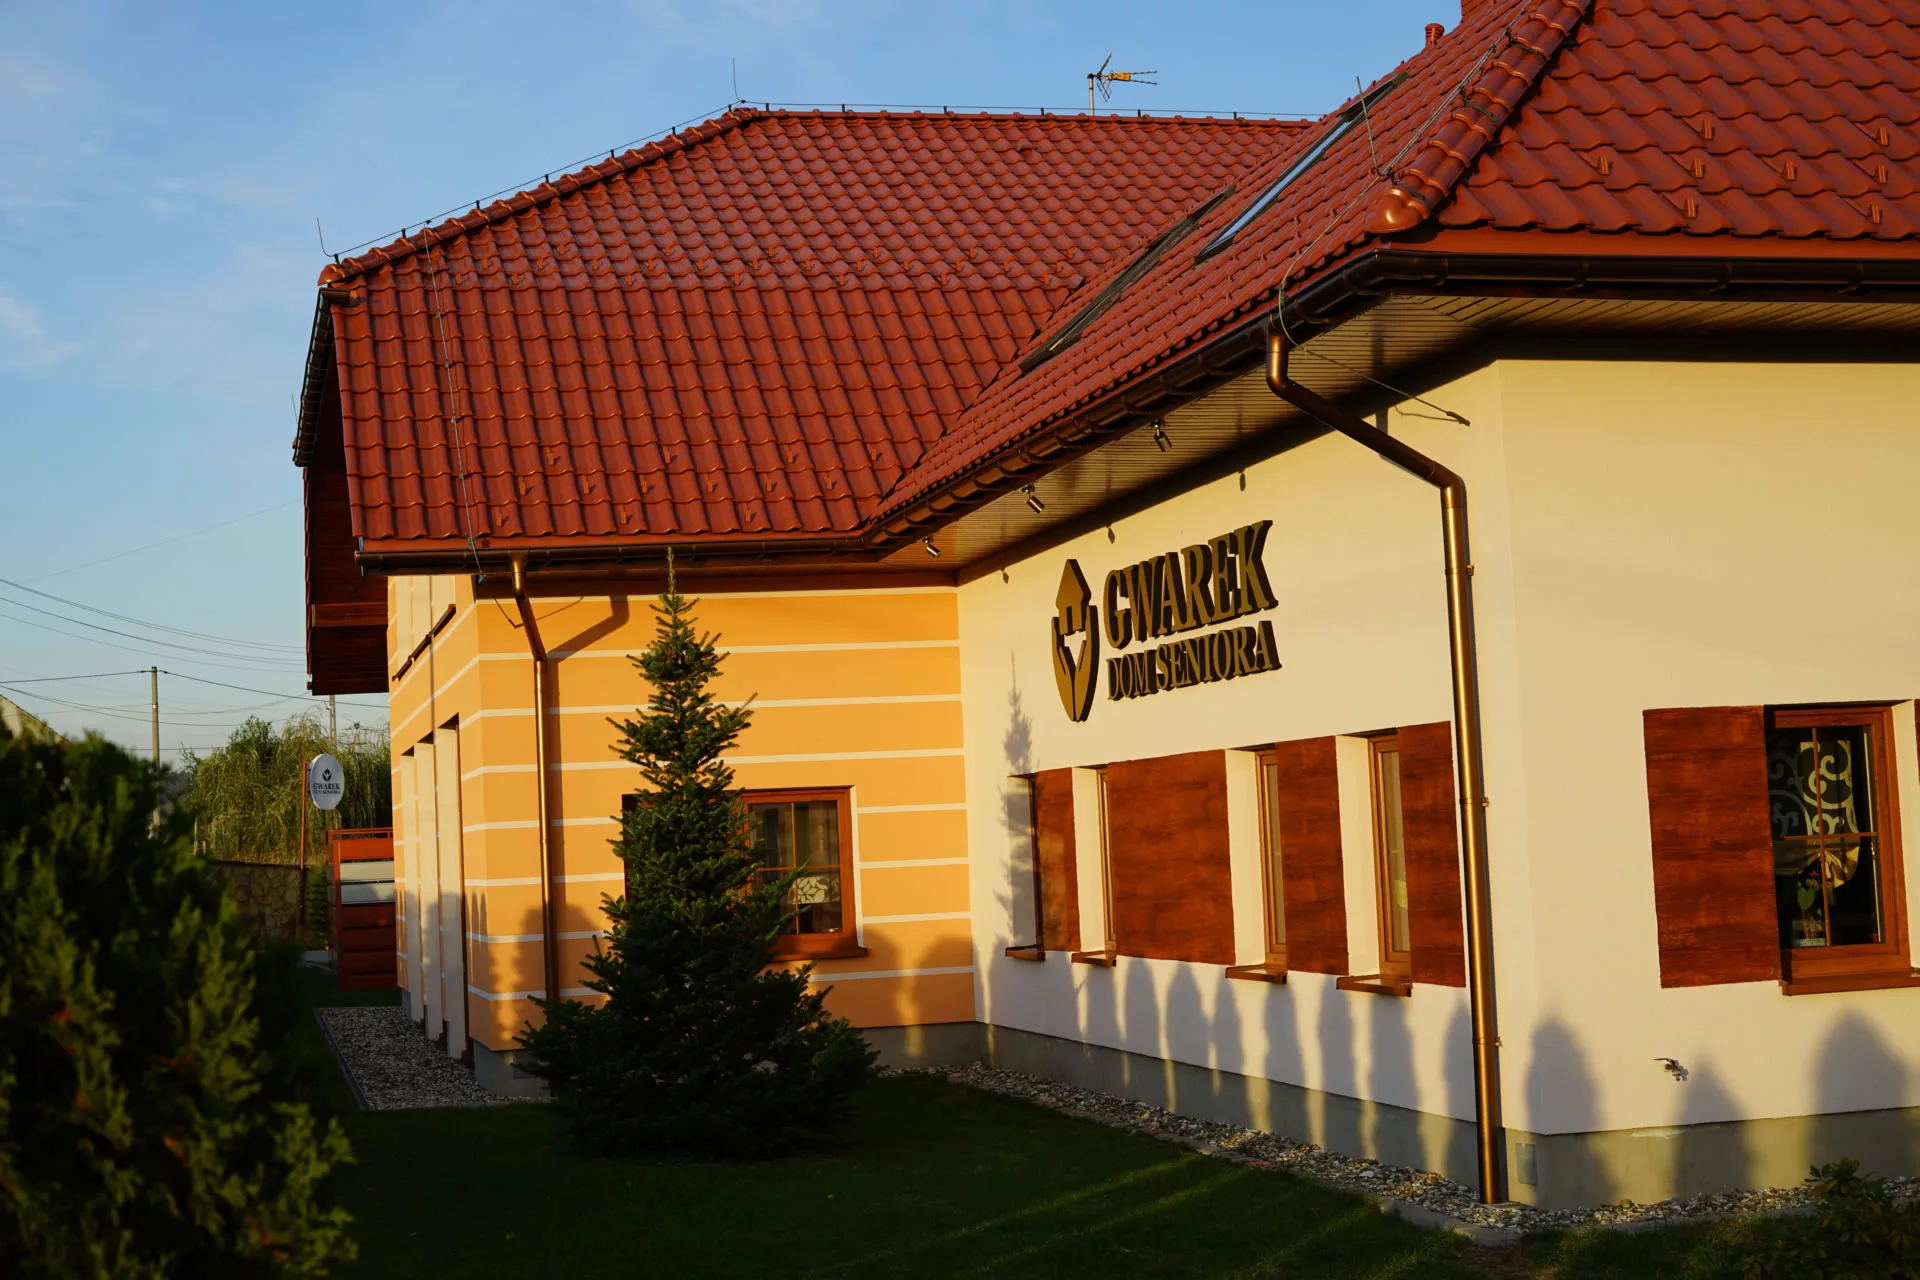 Opieka Całodobowa GWAREK zlokalizowany w okolicach Rybnika.